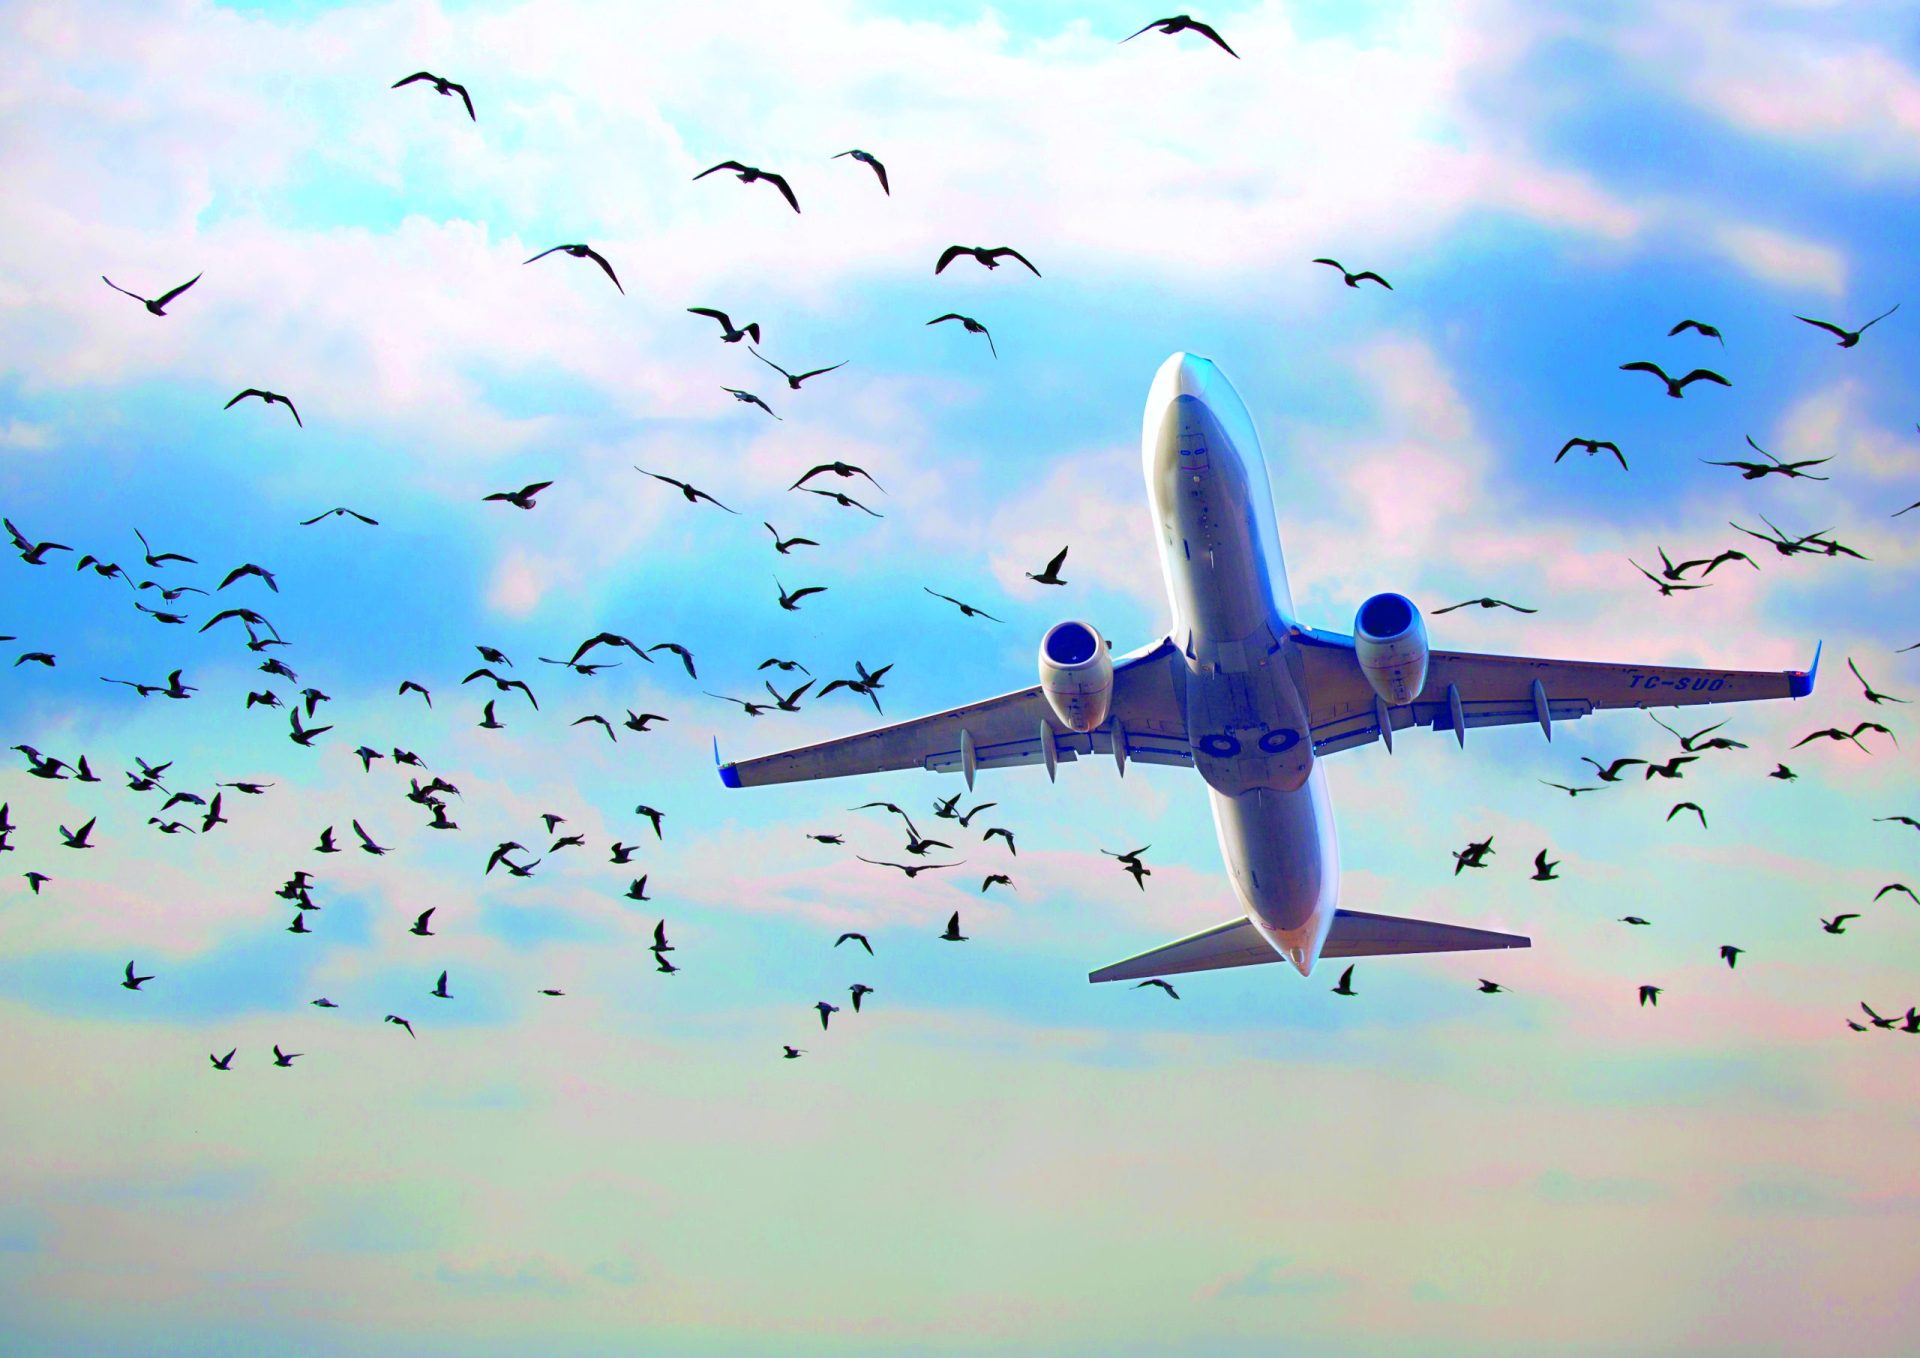 Em cinco anos, aves puseram em risco 1322 voos